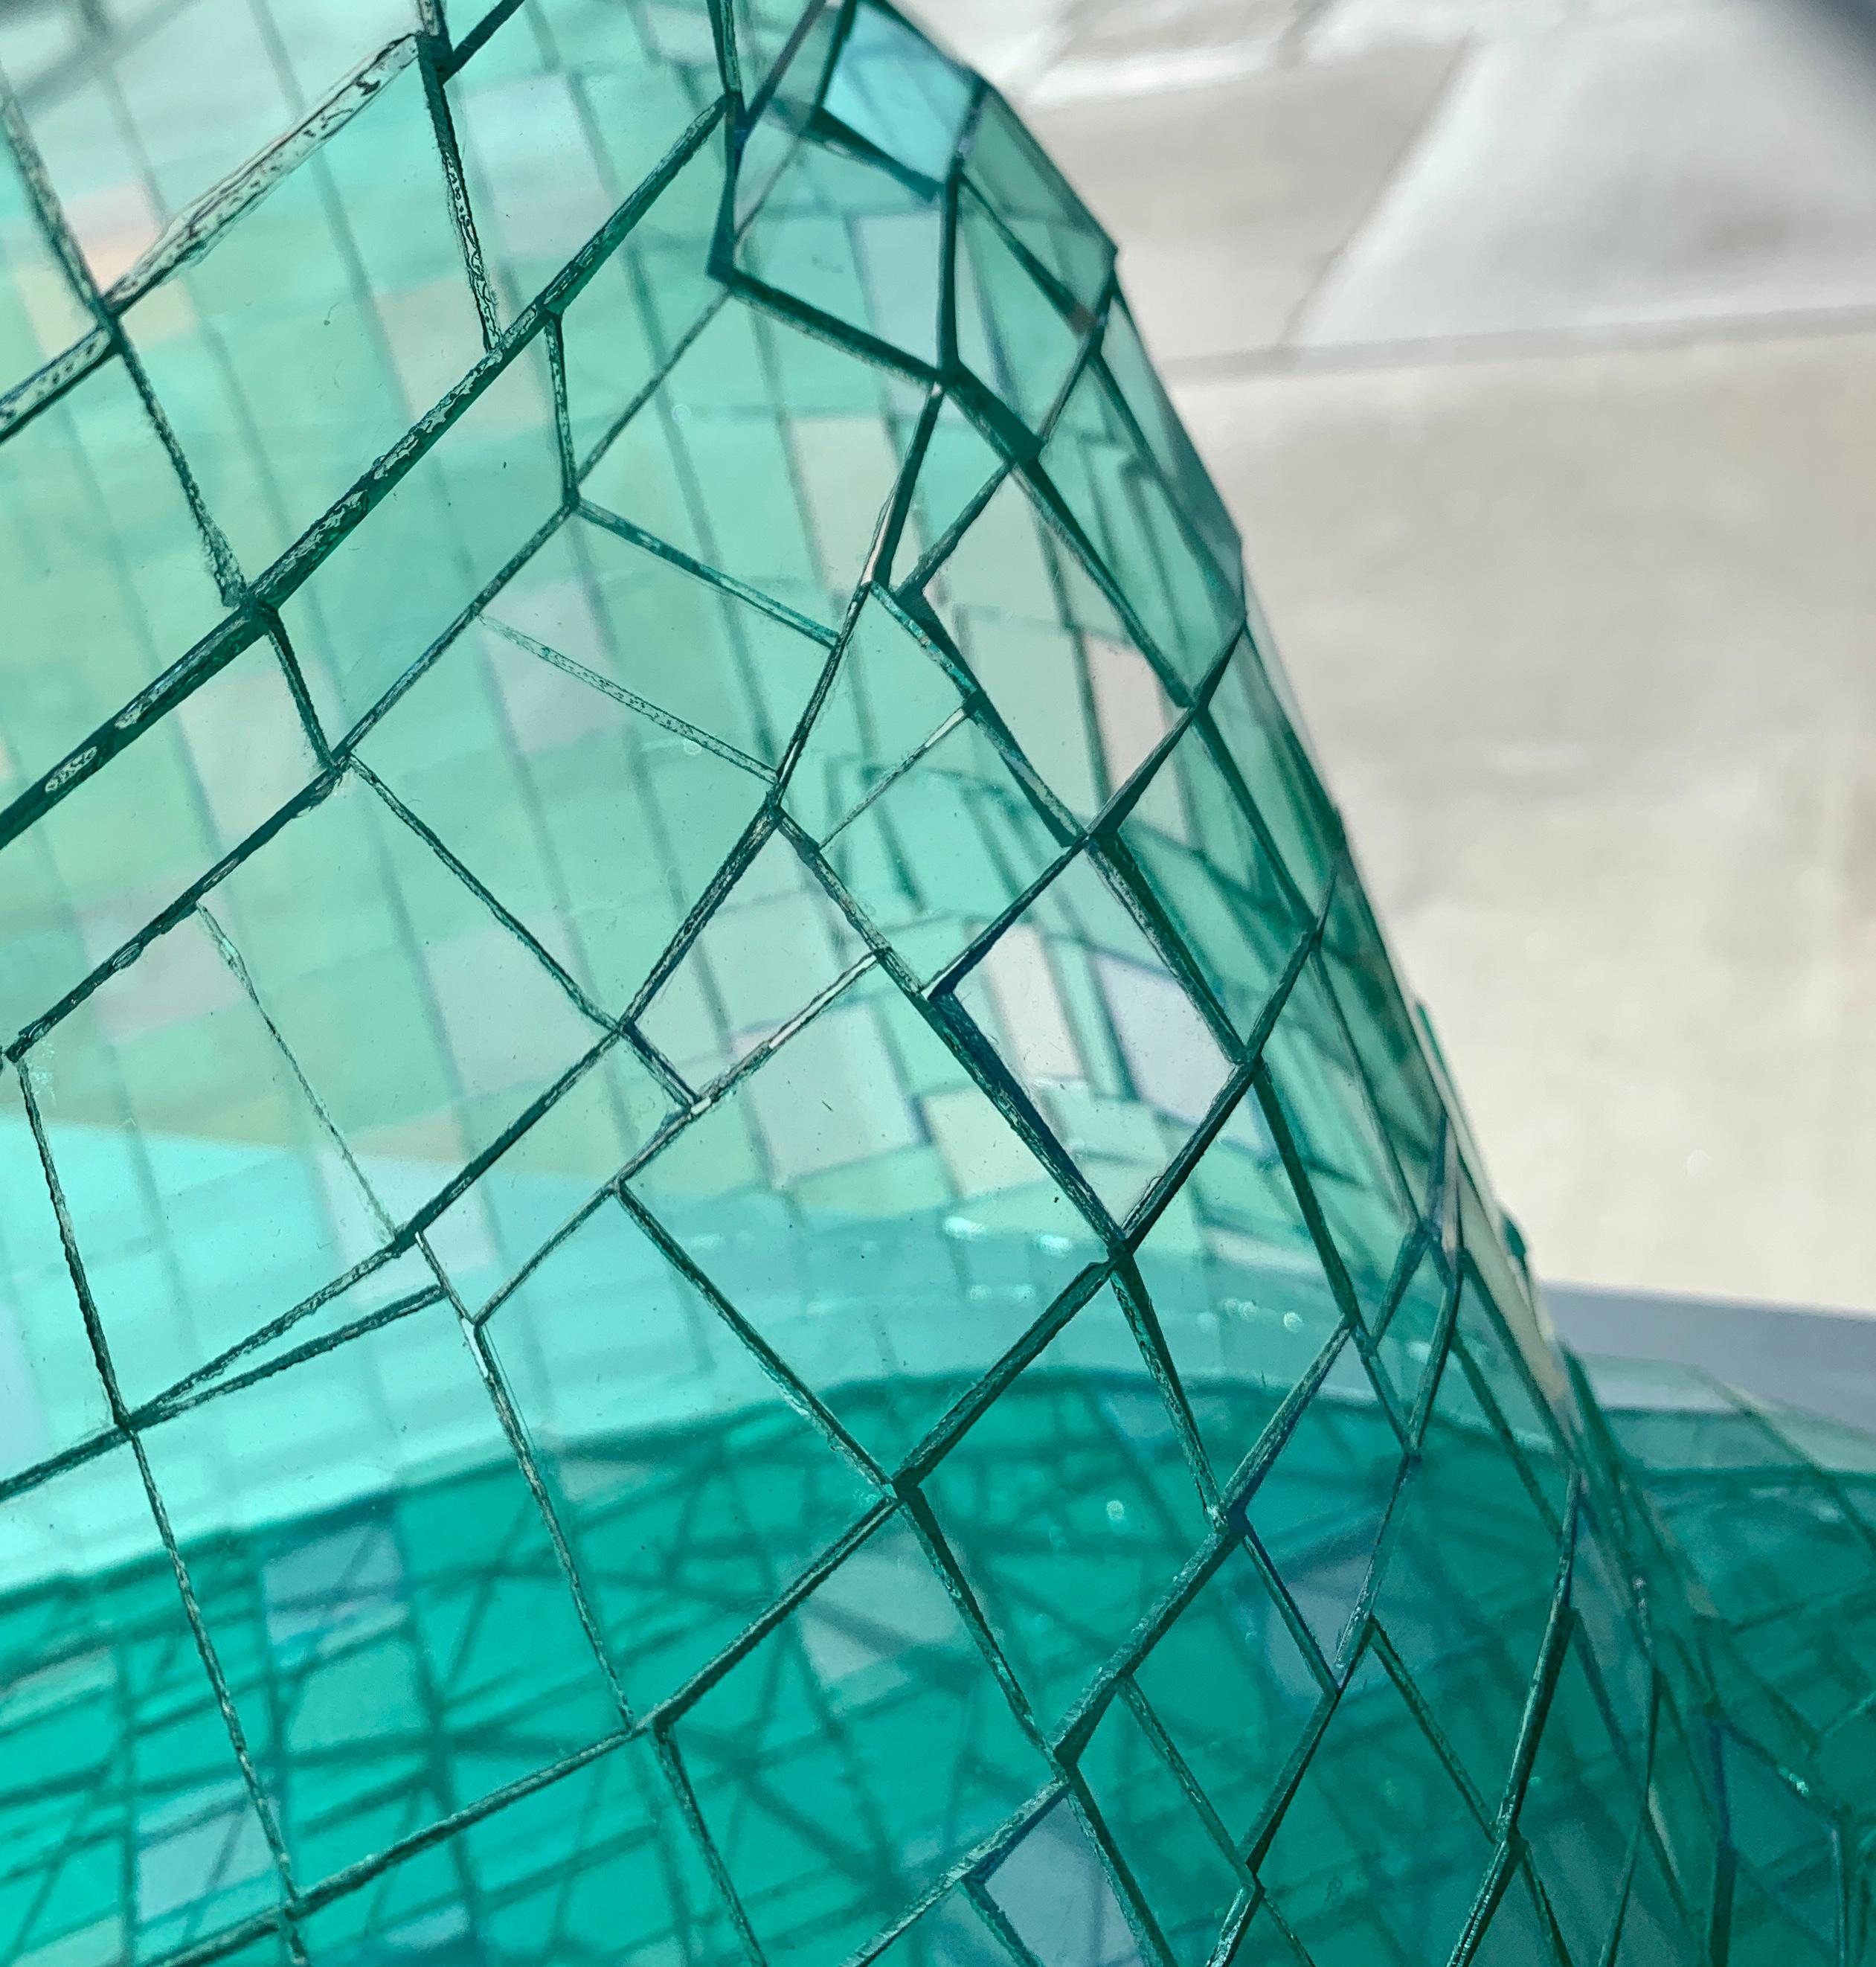 Glass Pillow (Green), Colin Roberts Plexiglass Sculpture Transparent For Sale 4